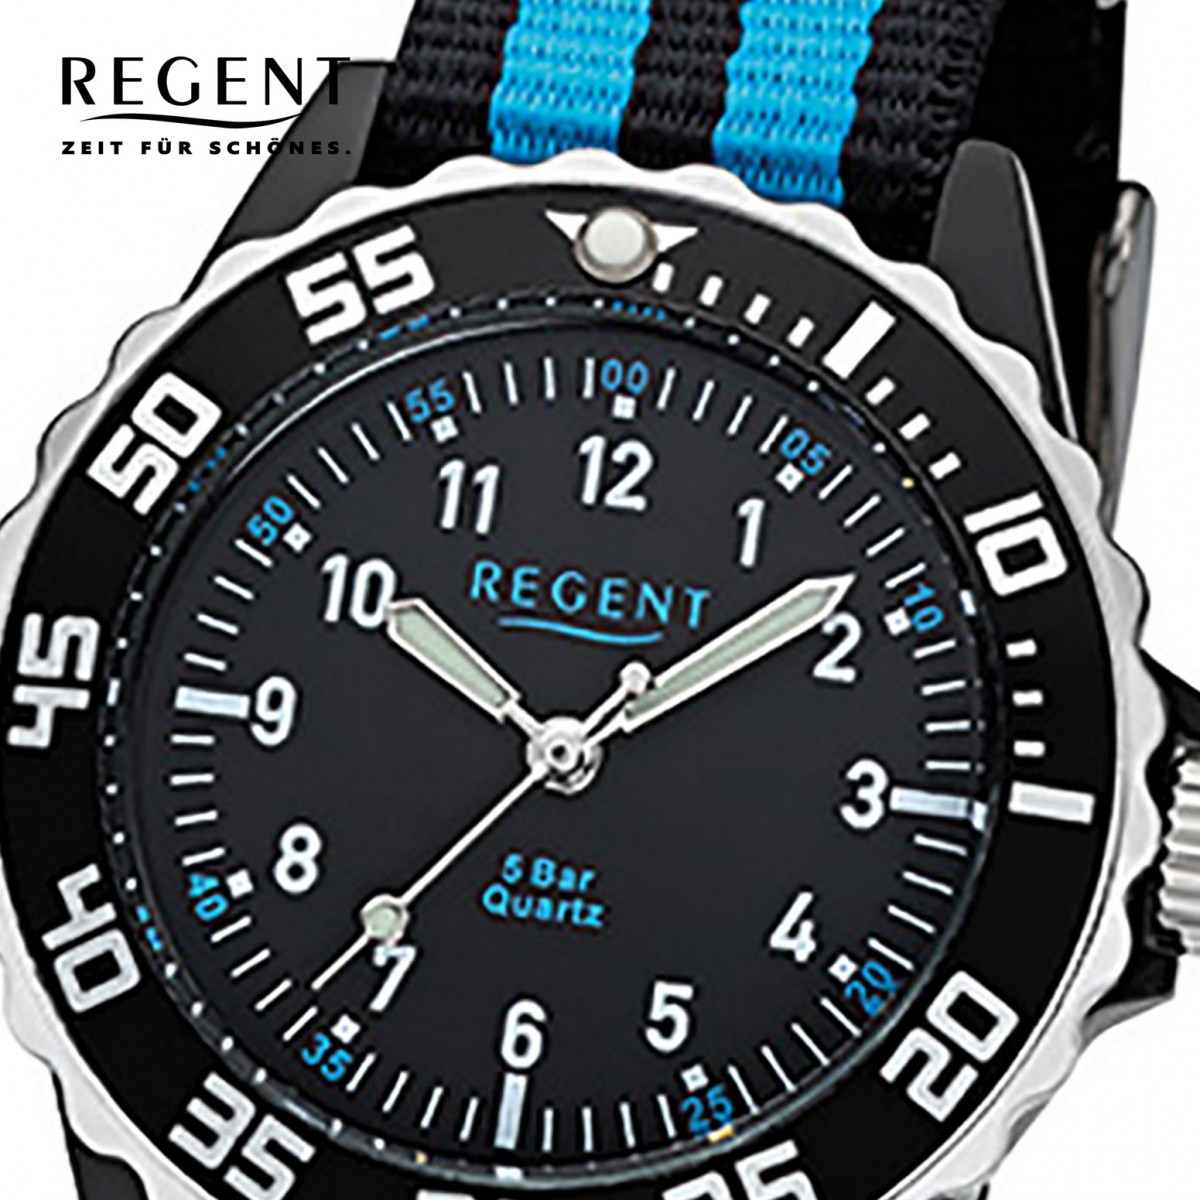 Jugend-Armbanduhr Regent Kinder, 32-F-1126 Textil, schwarz blau Stoff-Armband Quarz-Uhr URF1126